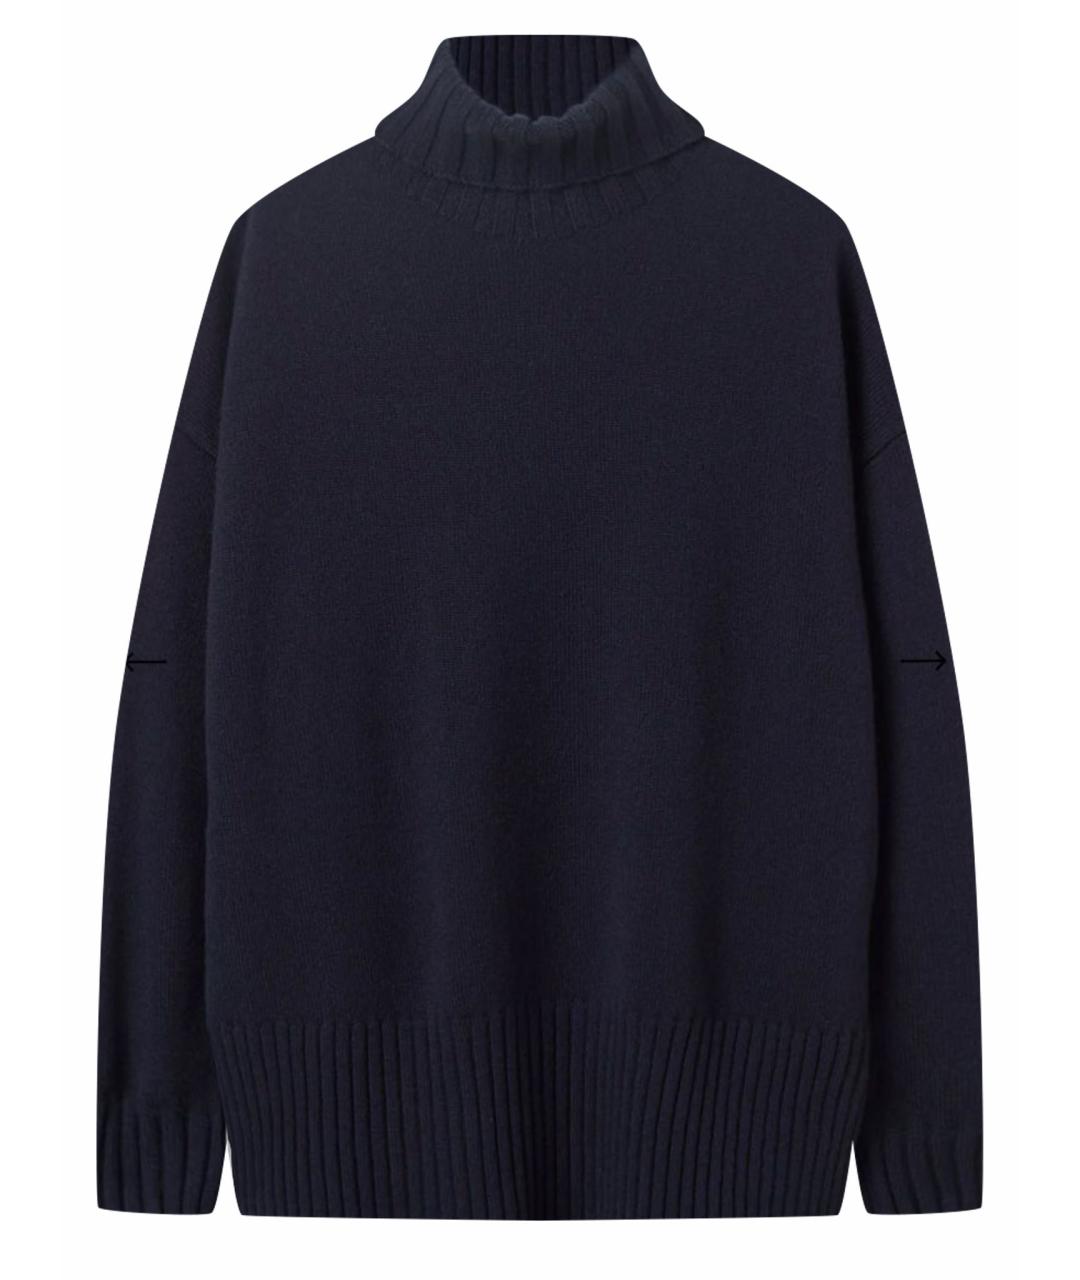 FALCONERI Темно-синий кашемировый джемпер / свитер, фото 1